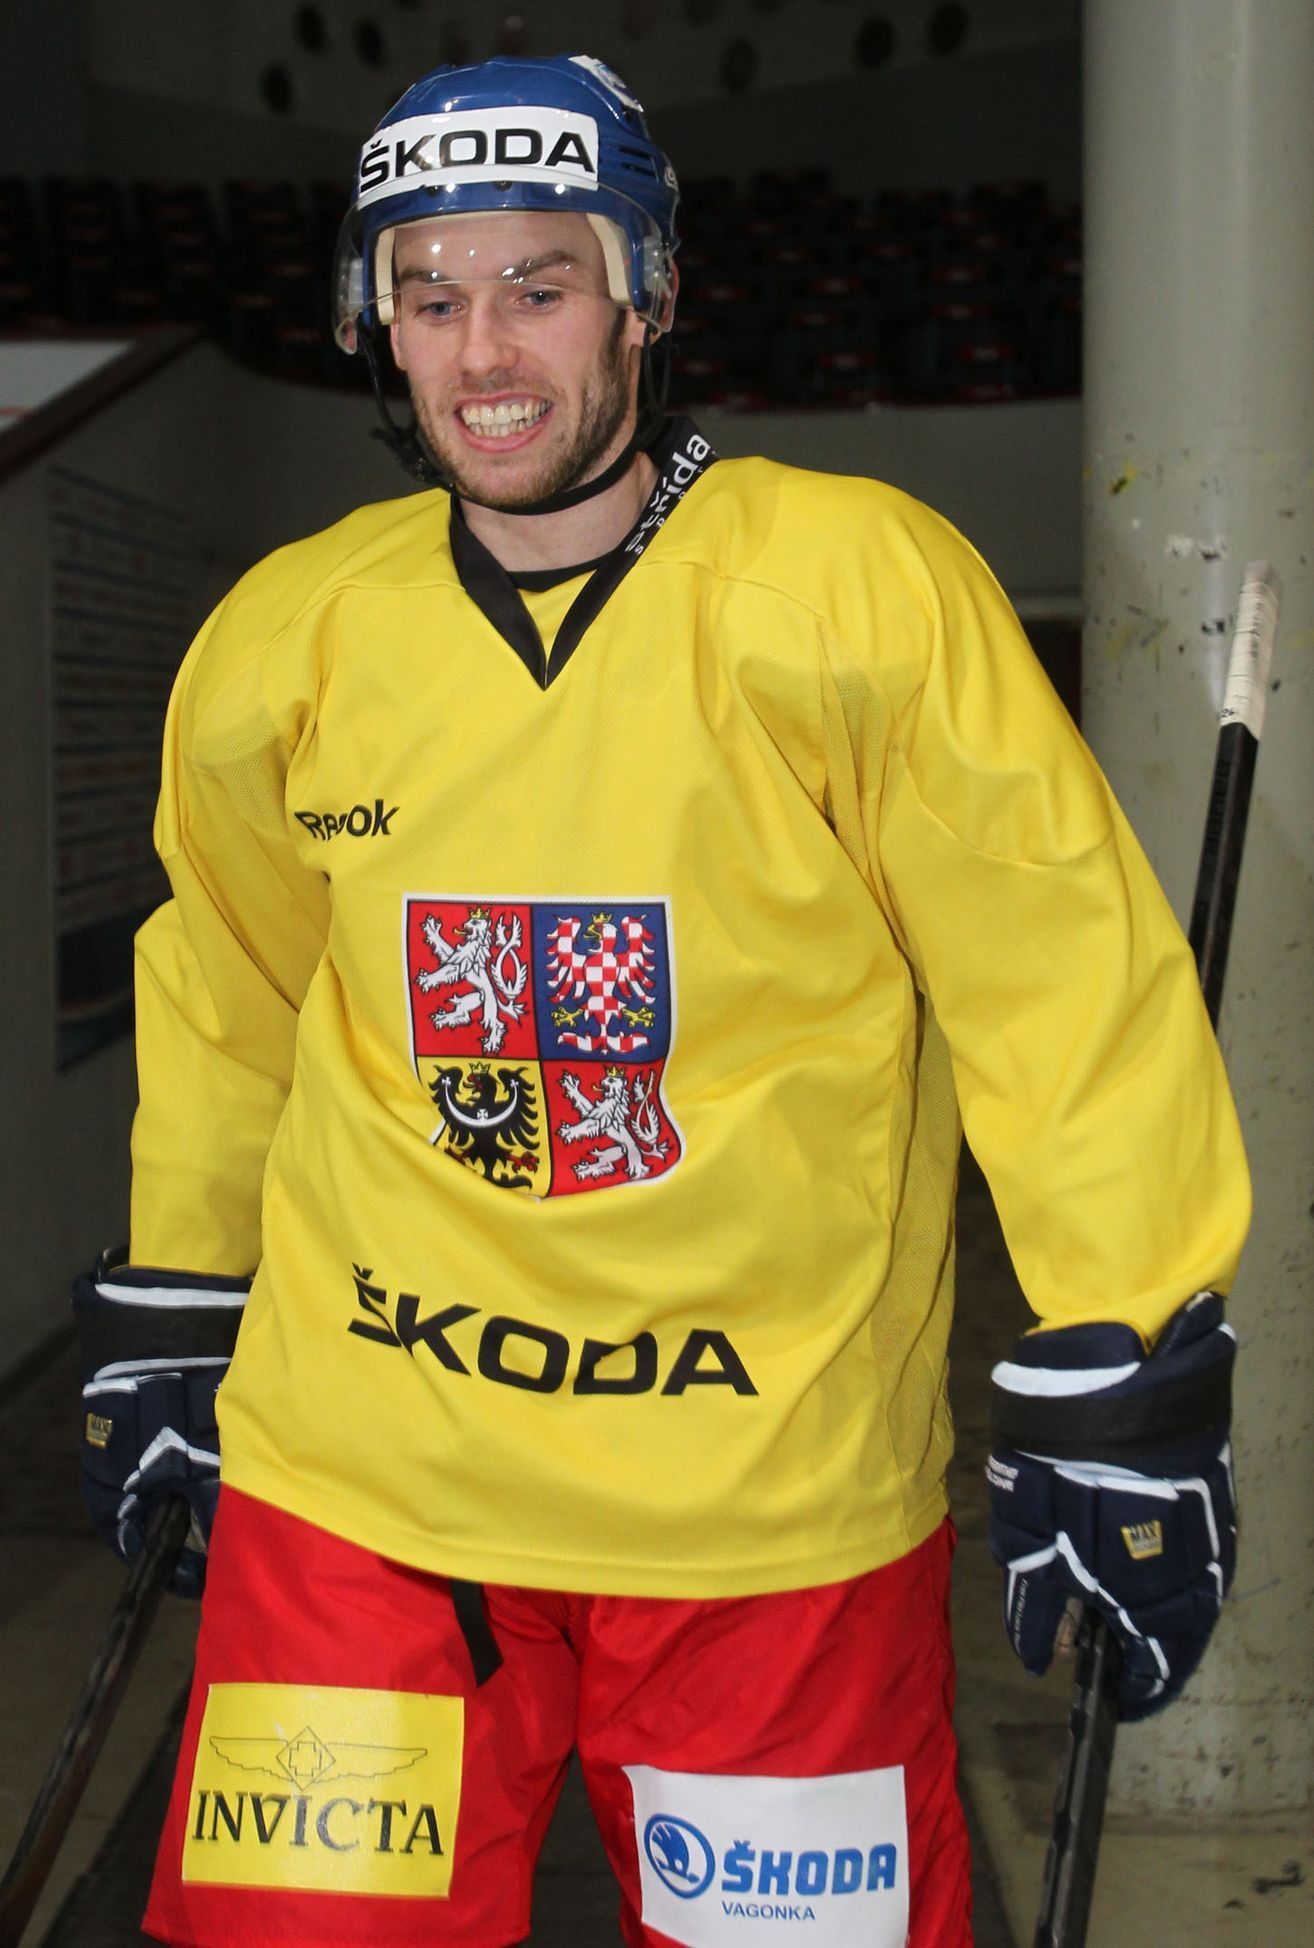 Trénink hokejové reprezenatace: Vladimír Svačina